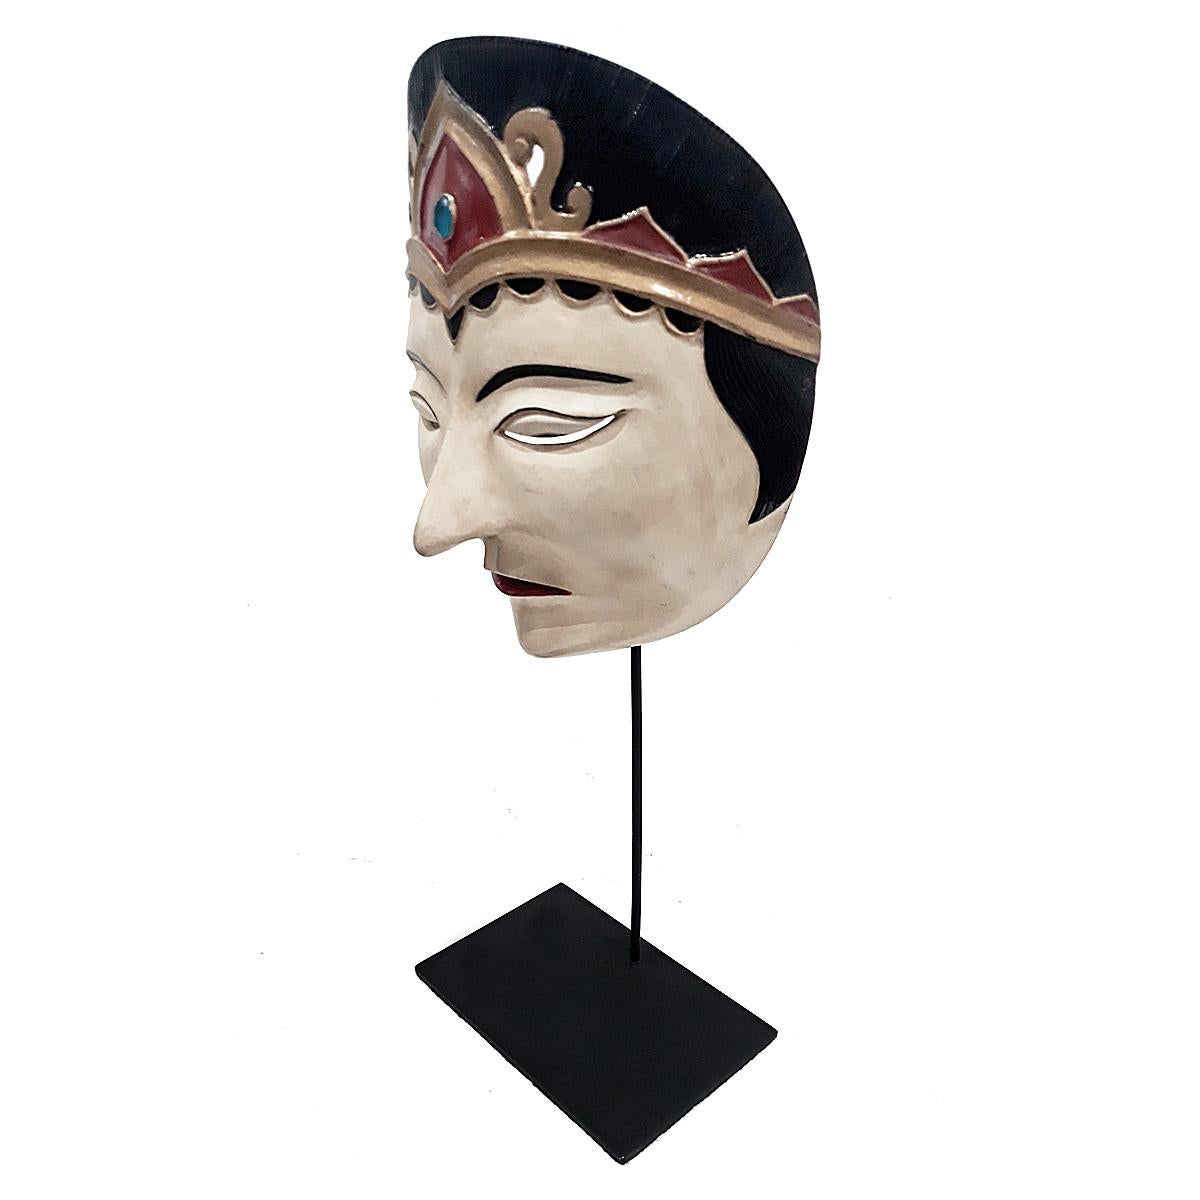 Eine alte Theatermaske aus Bali, Indonesien, ca. 1975-1980. 
Polychromiertes, handgeschnitztes Teakholz, montiert auf einem schwarzen Metallständer.

Diese Art von Maske wird bei indonesischen Topeng- oder Maskentheatertänzen verwendet, bei denen